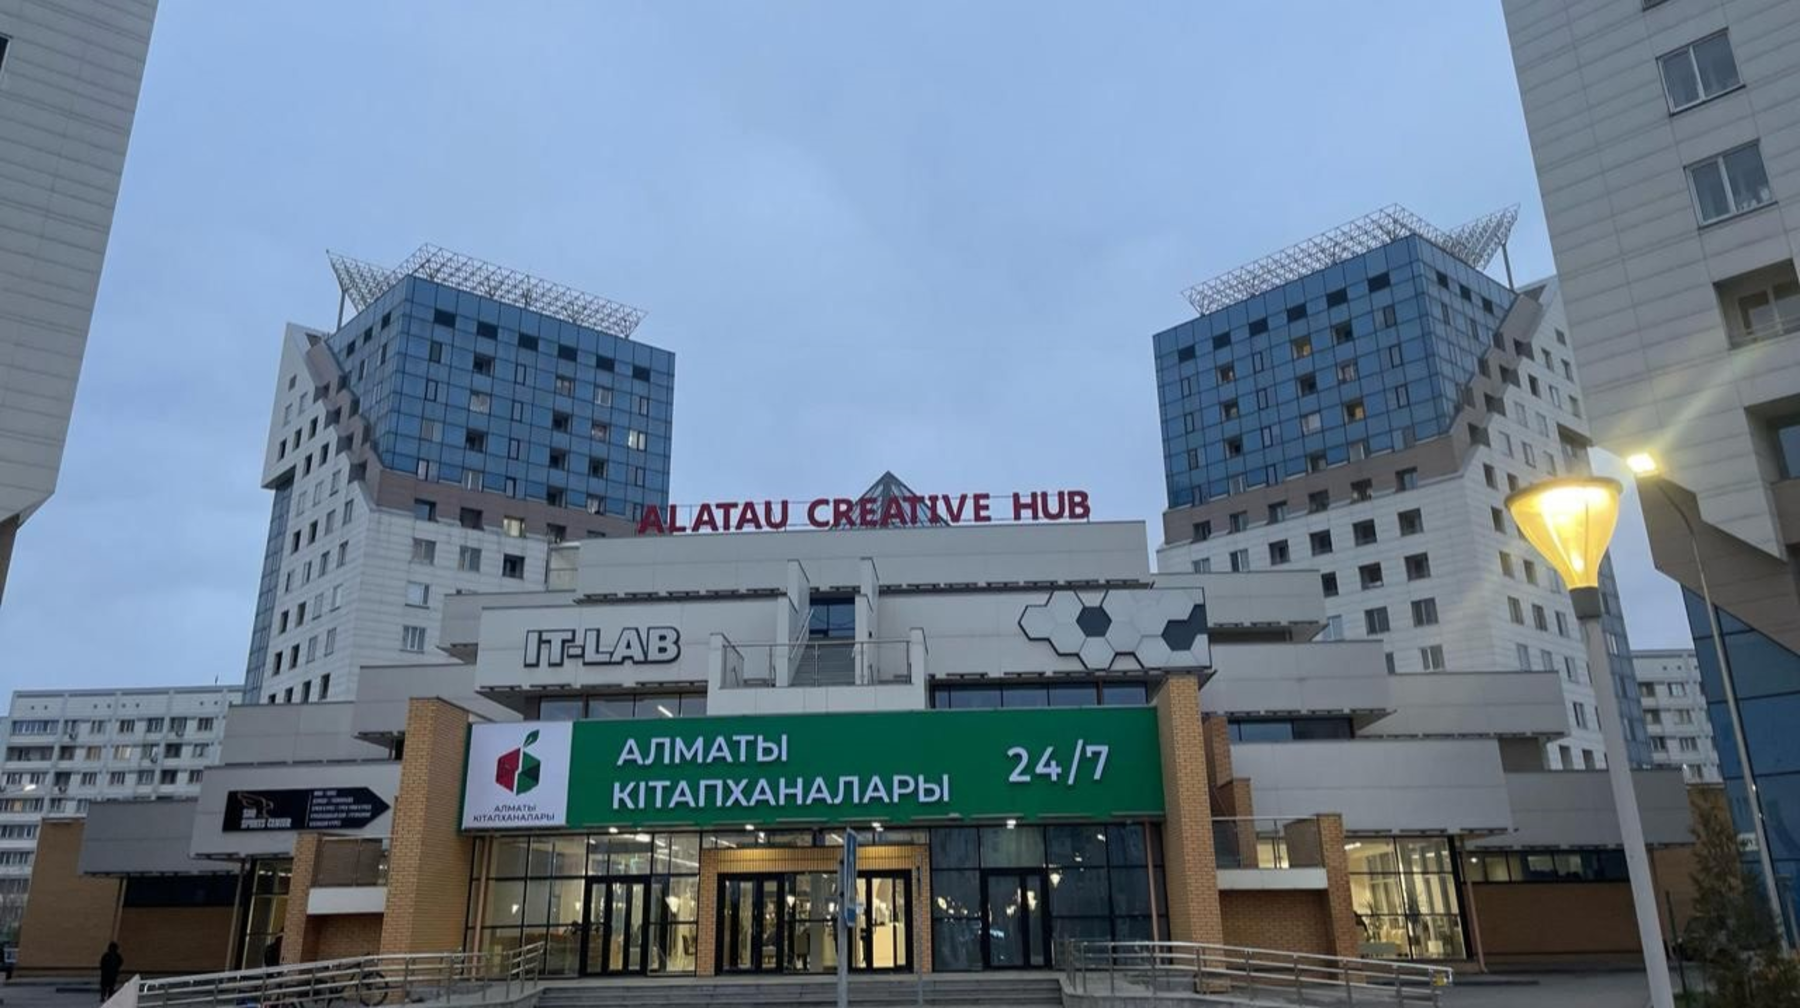 Алматыдағы тағы бір кітапхана 24/7 режимінде жұмыс істей бастады